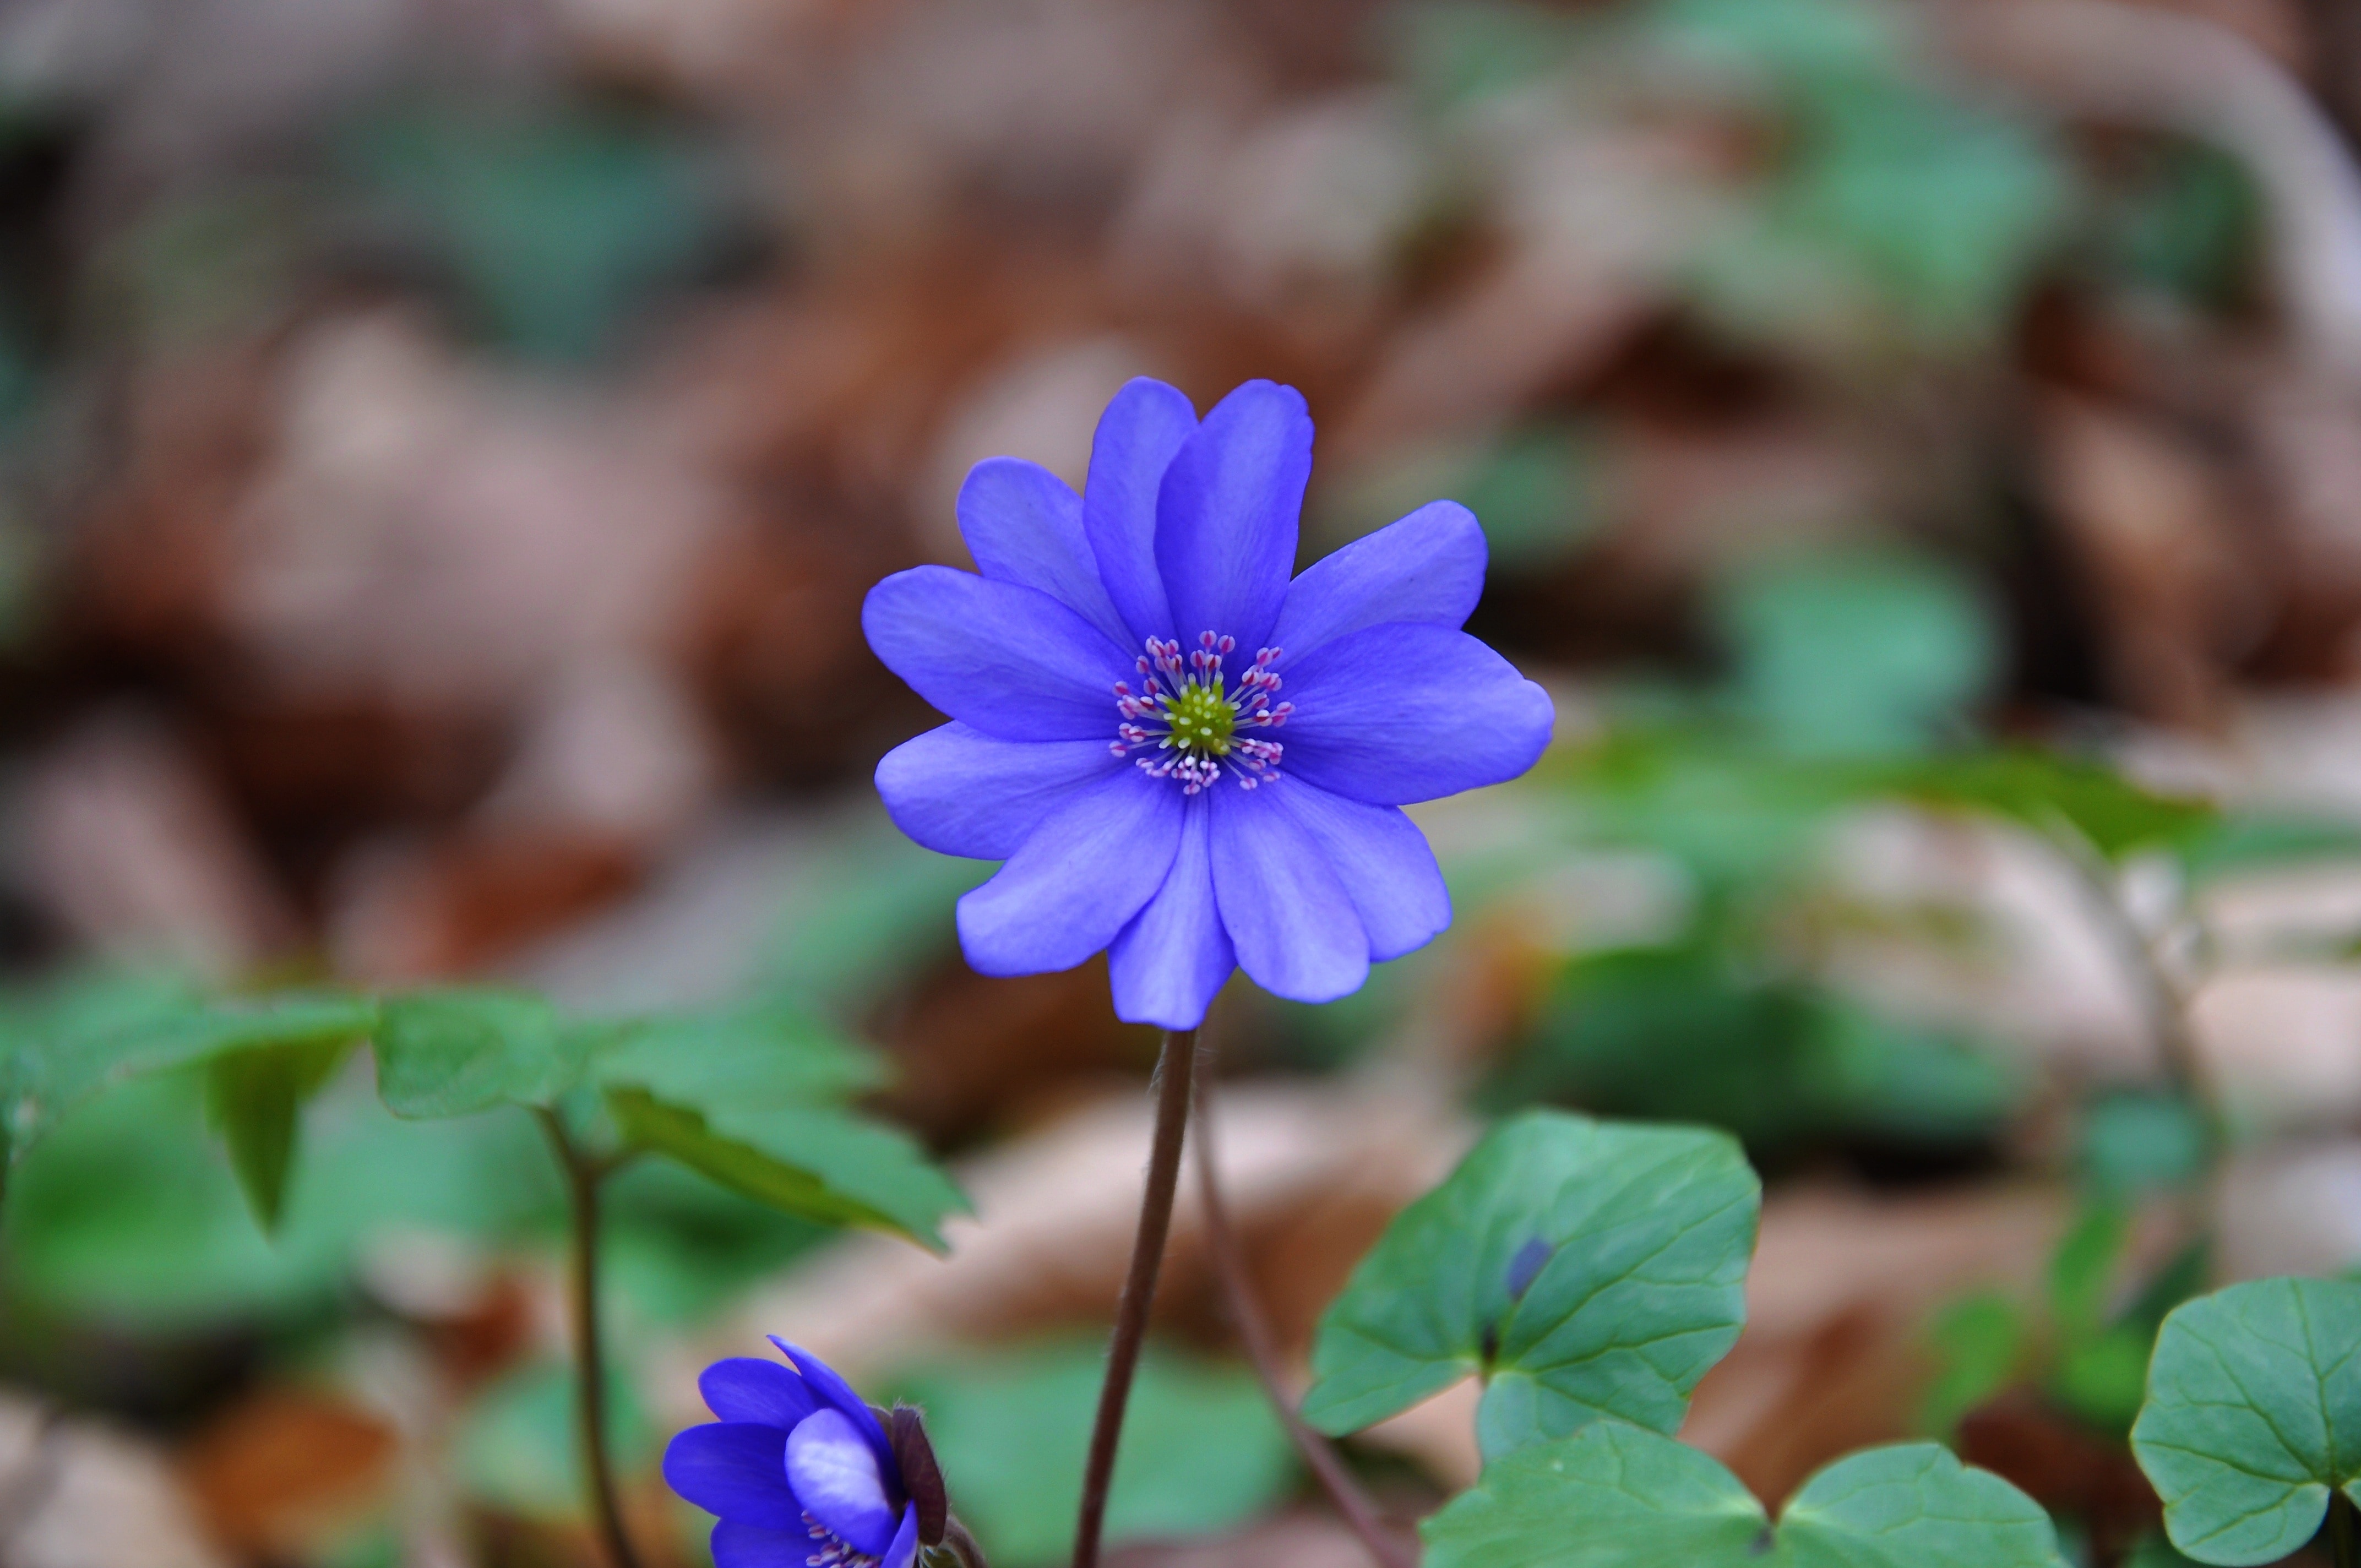 purple petaled flower